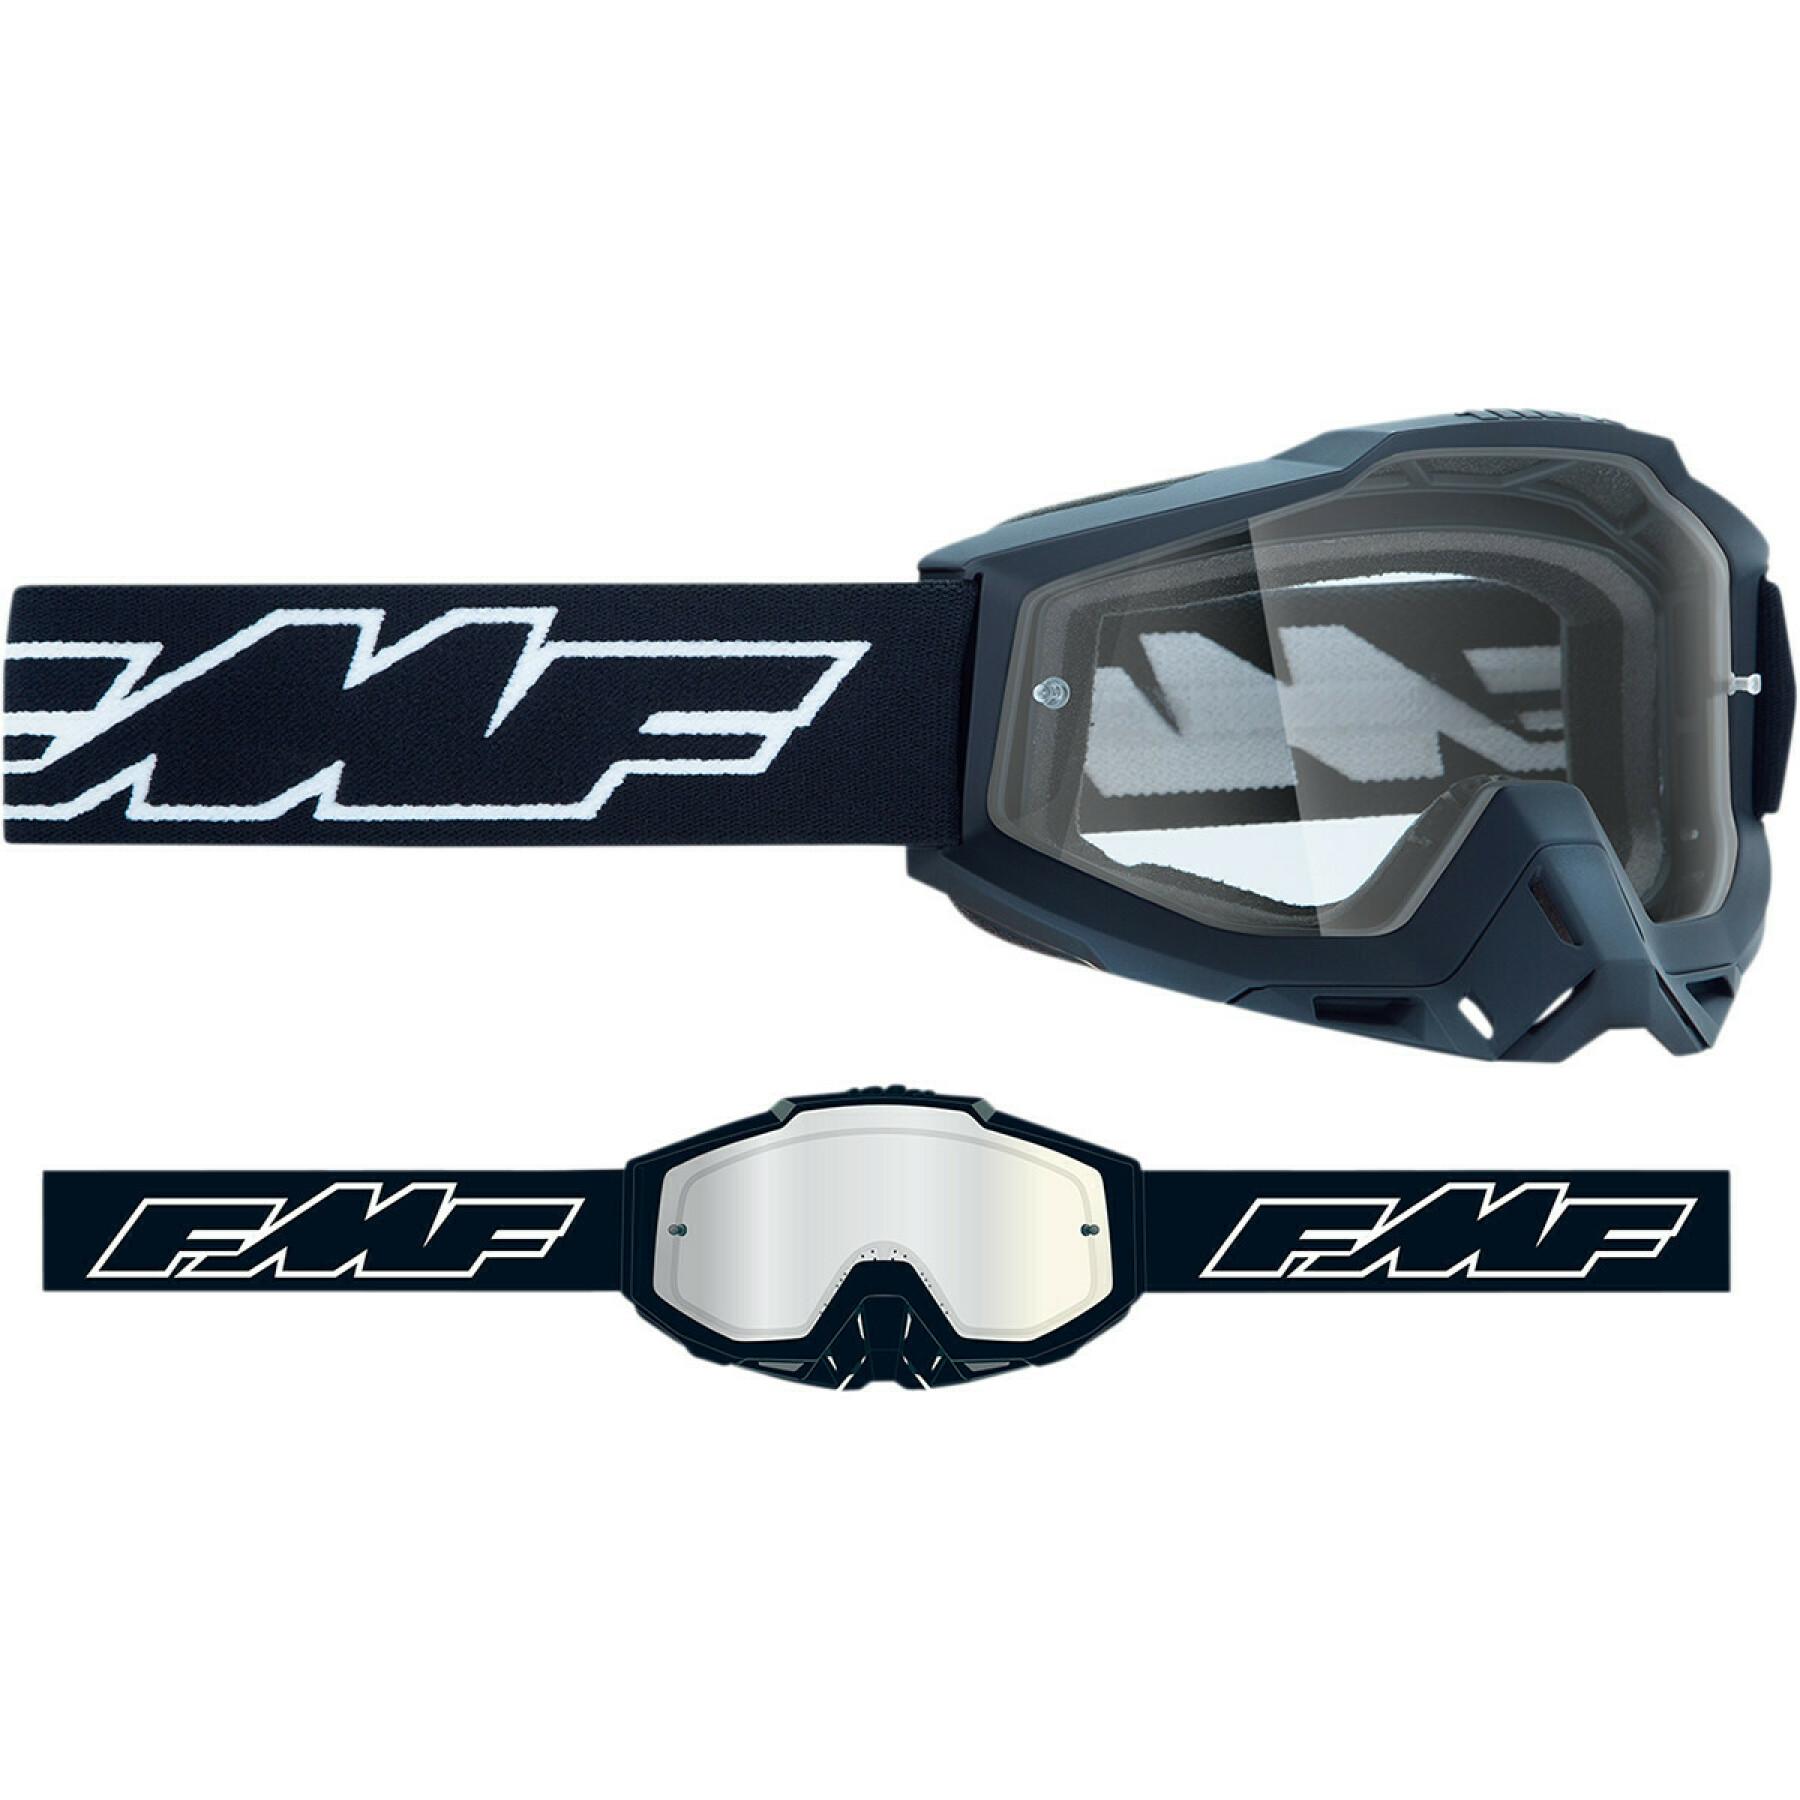 Gafas de cross para moto FMF Vision rocket